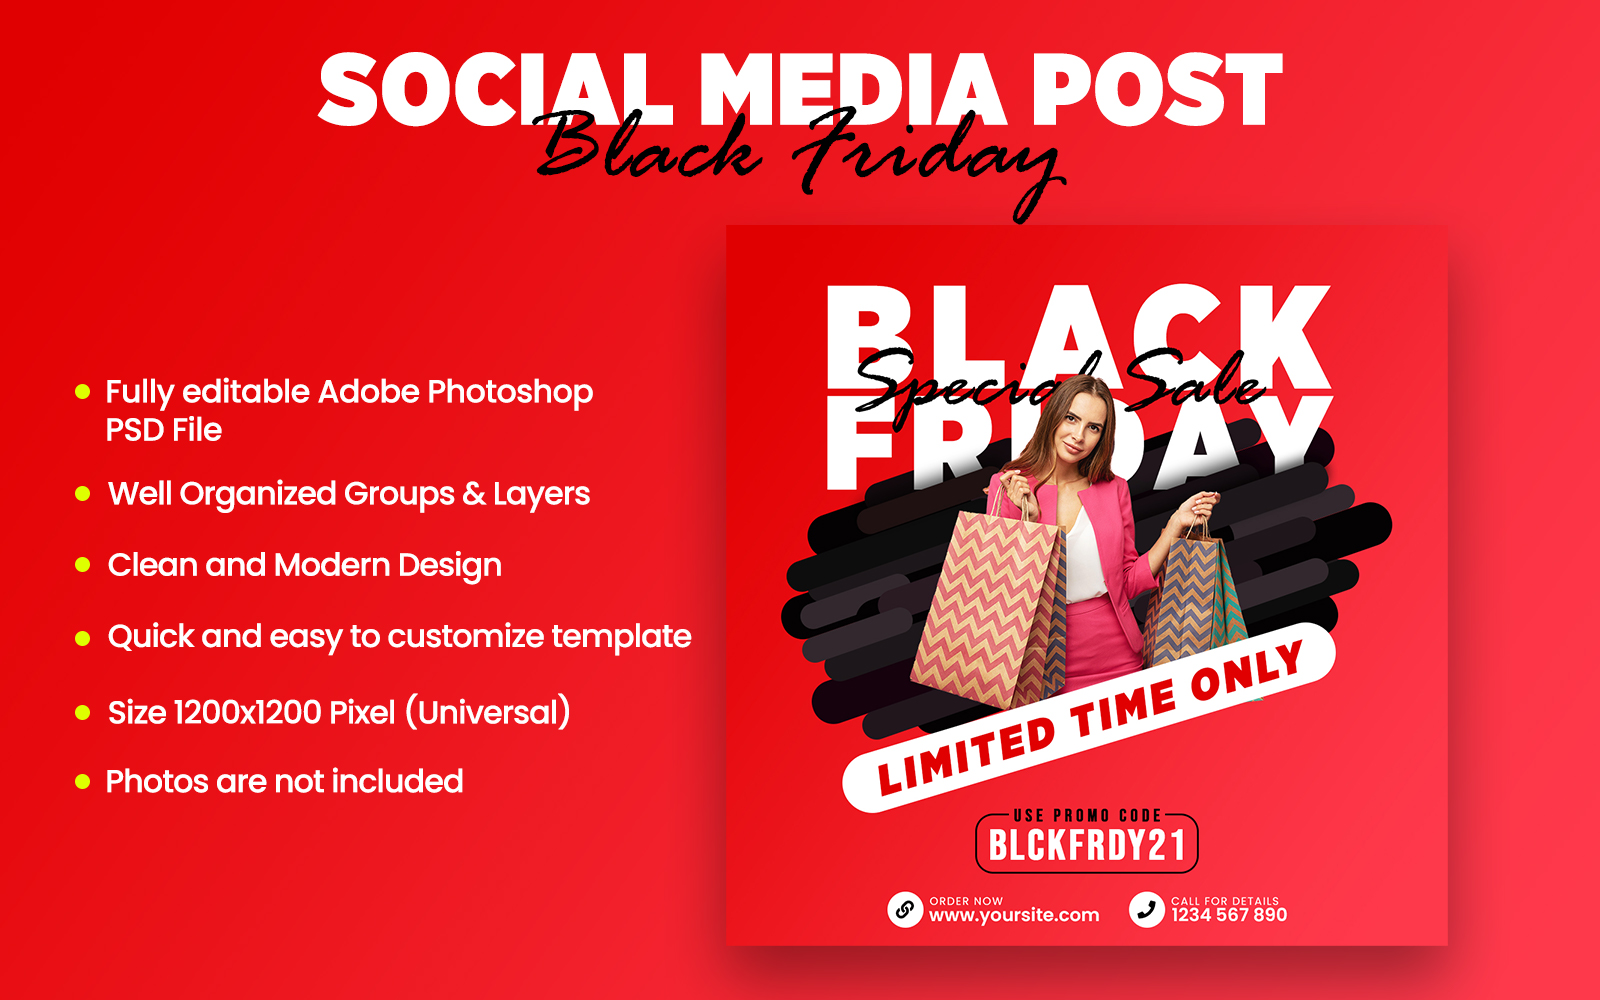 Black Friday Social Media Post PSD Template